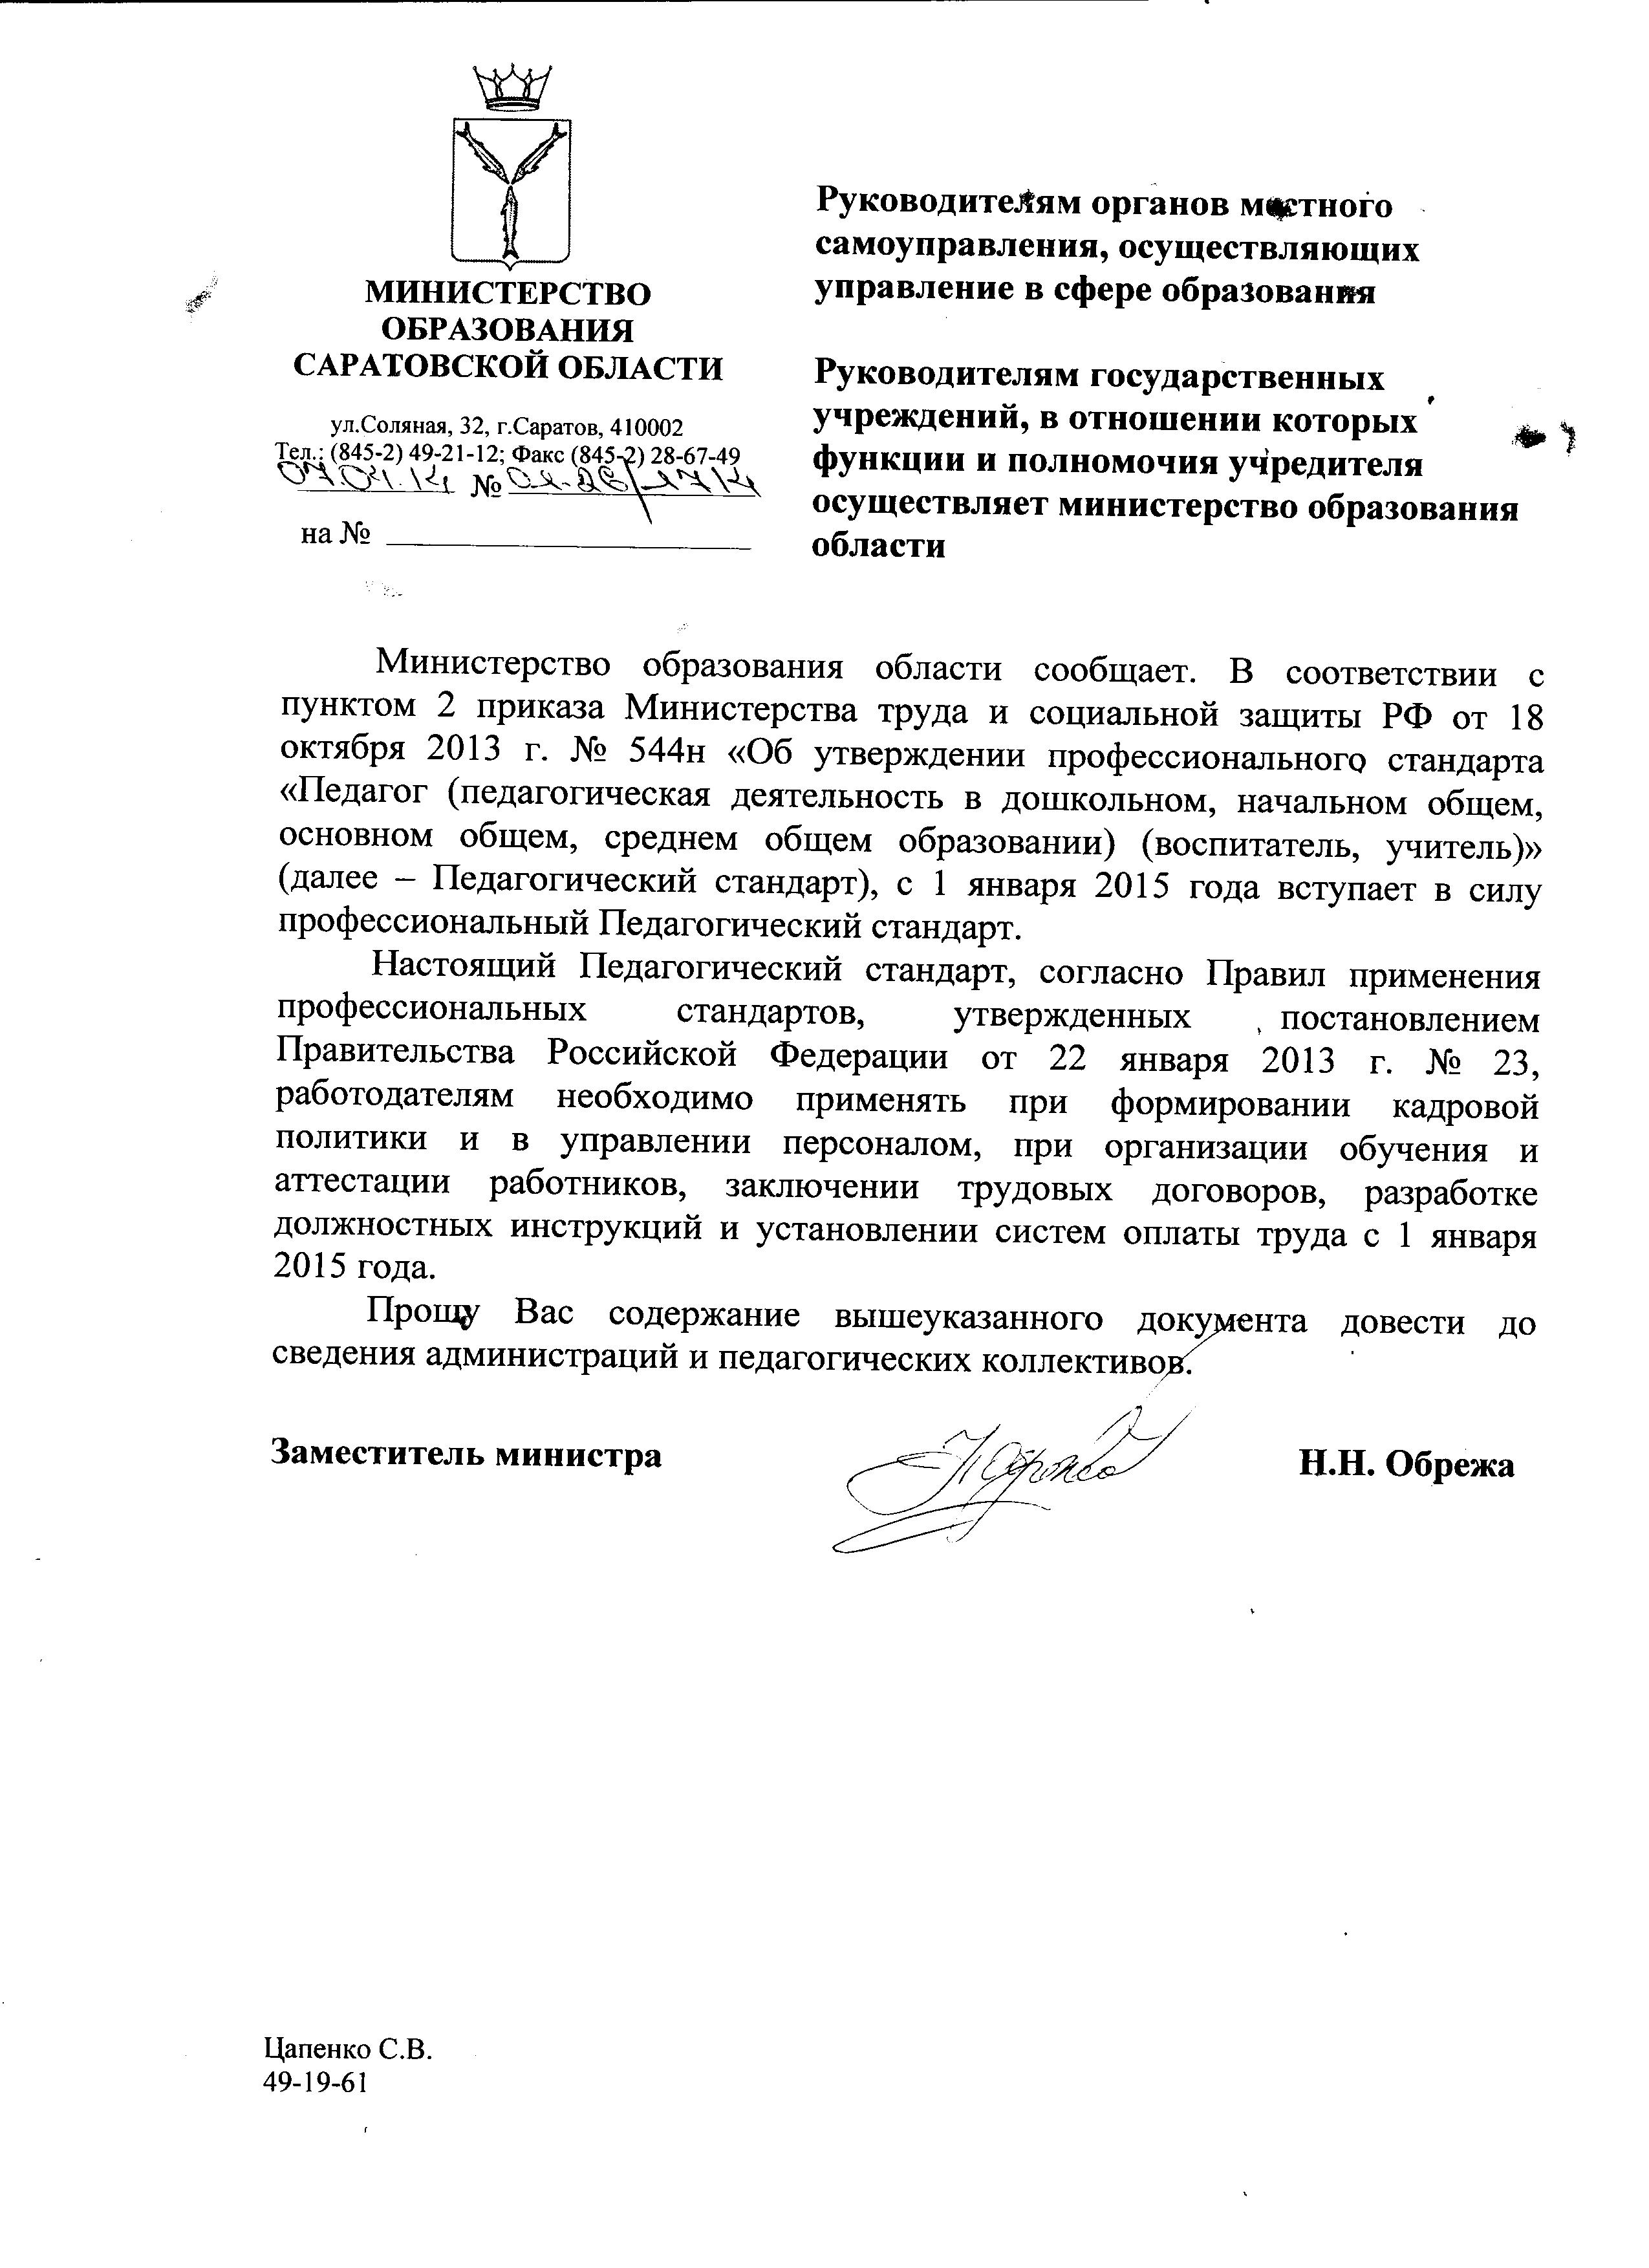 Письмо МинОбразования Саратовской области